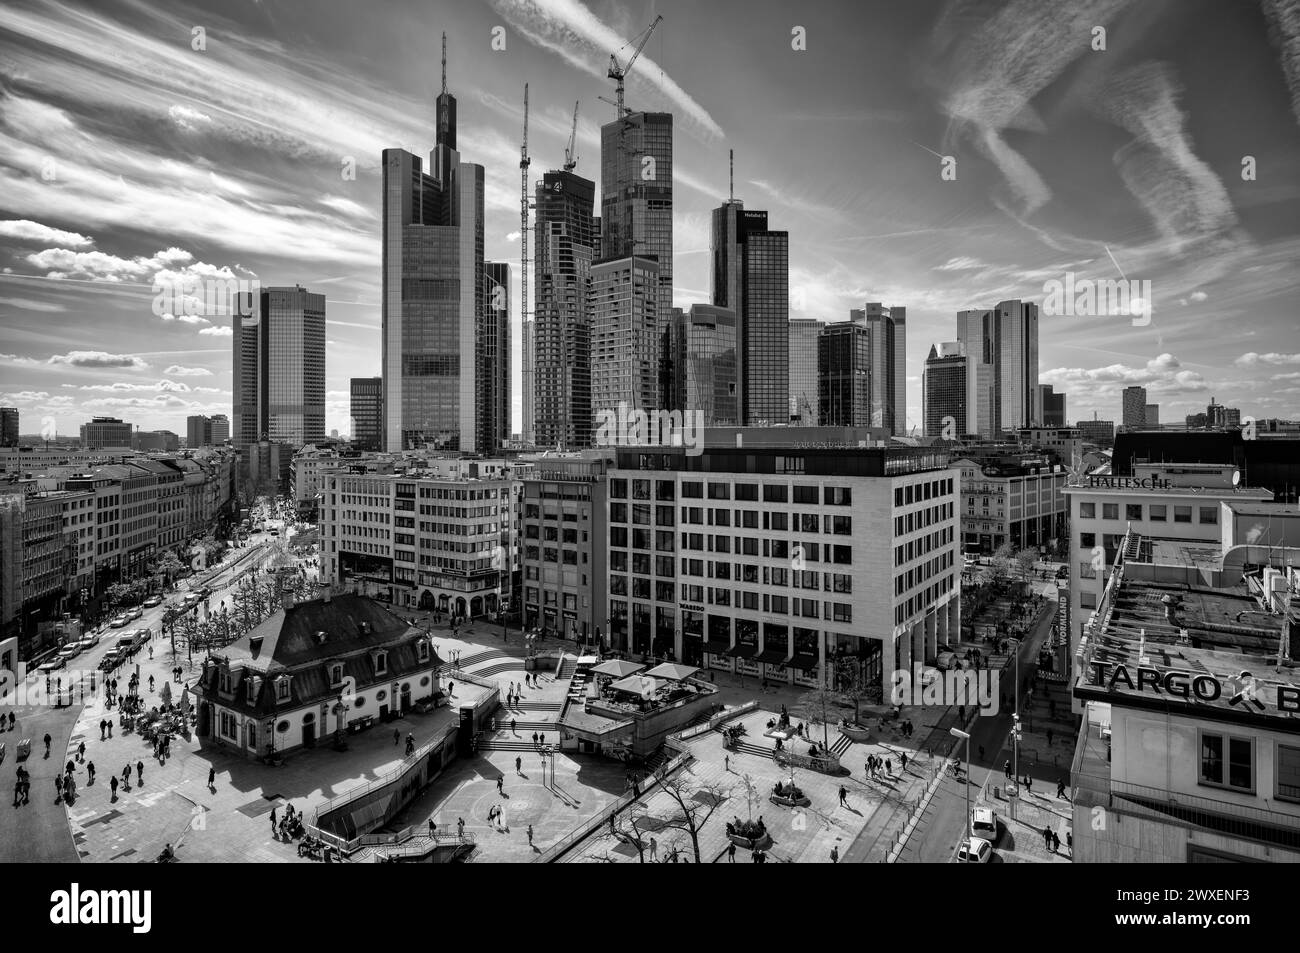 Hauptwache, Skyline Financial District, Commerzbank Tower, QUATRE projets de construction, Westend, noir et blanc, Francfort-sur-le-main, Hesse, Allemagne Banque D'Images